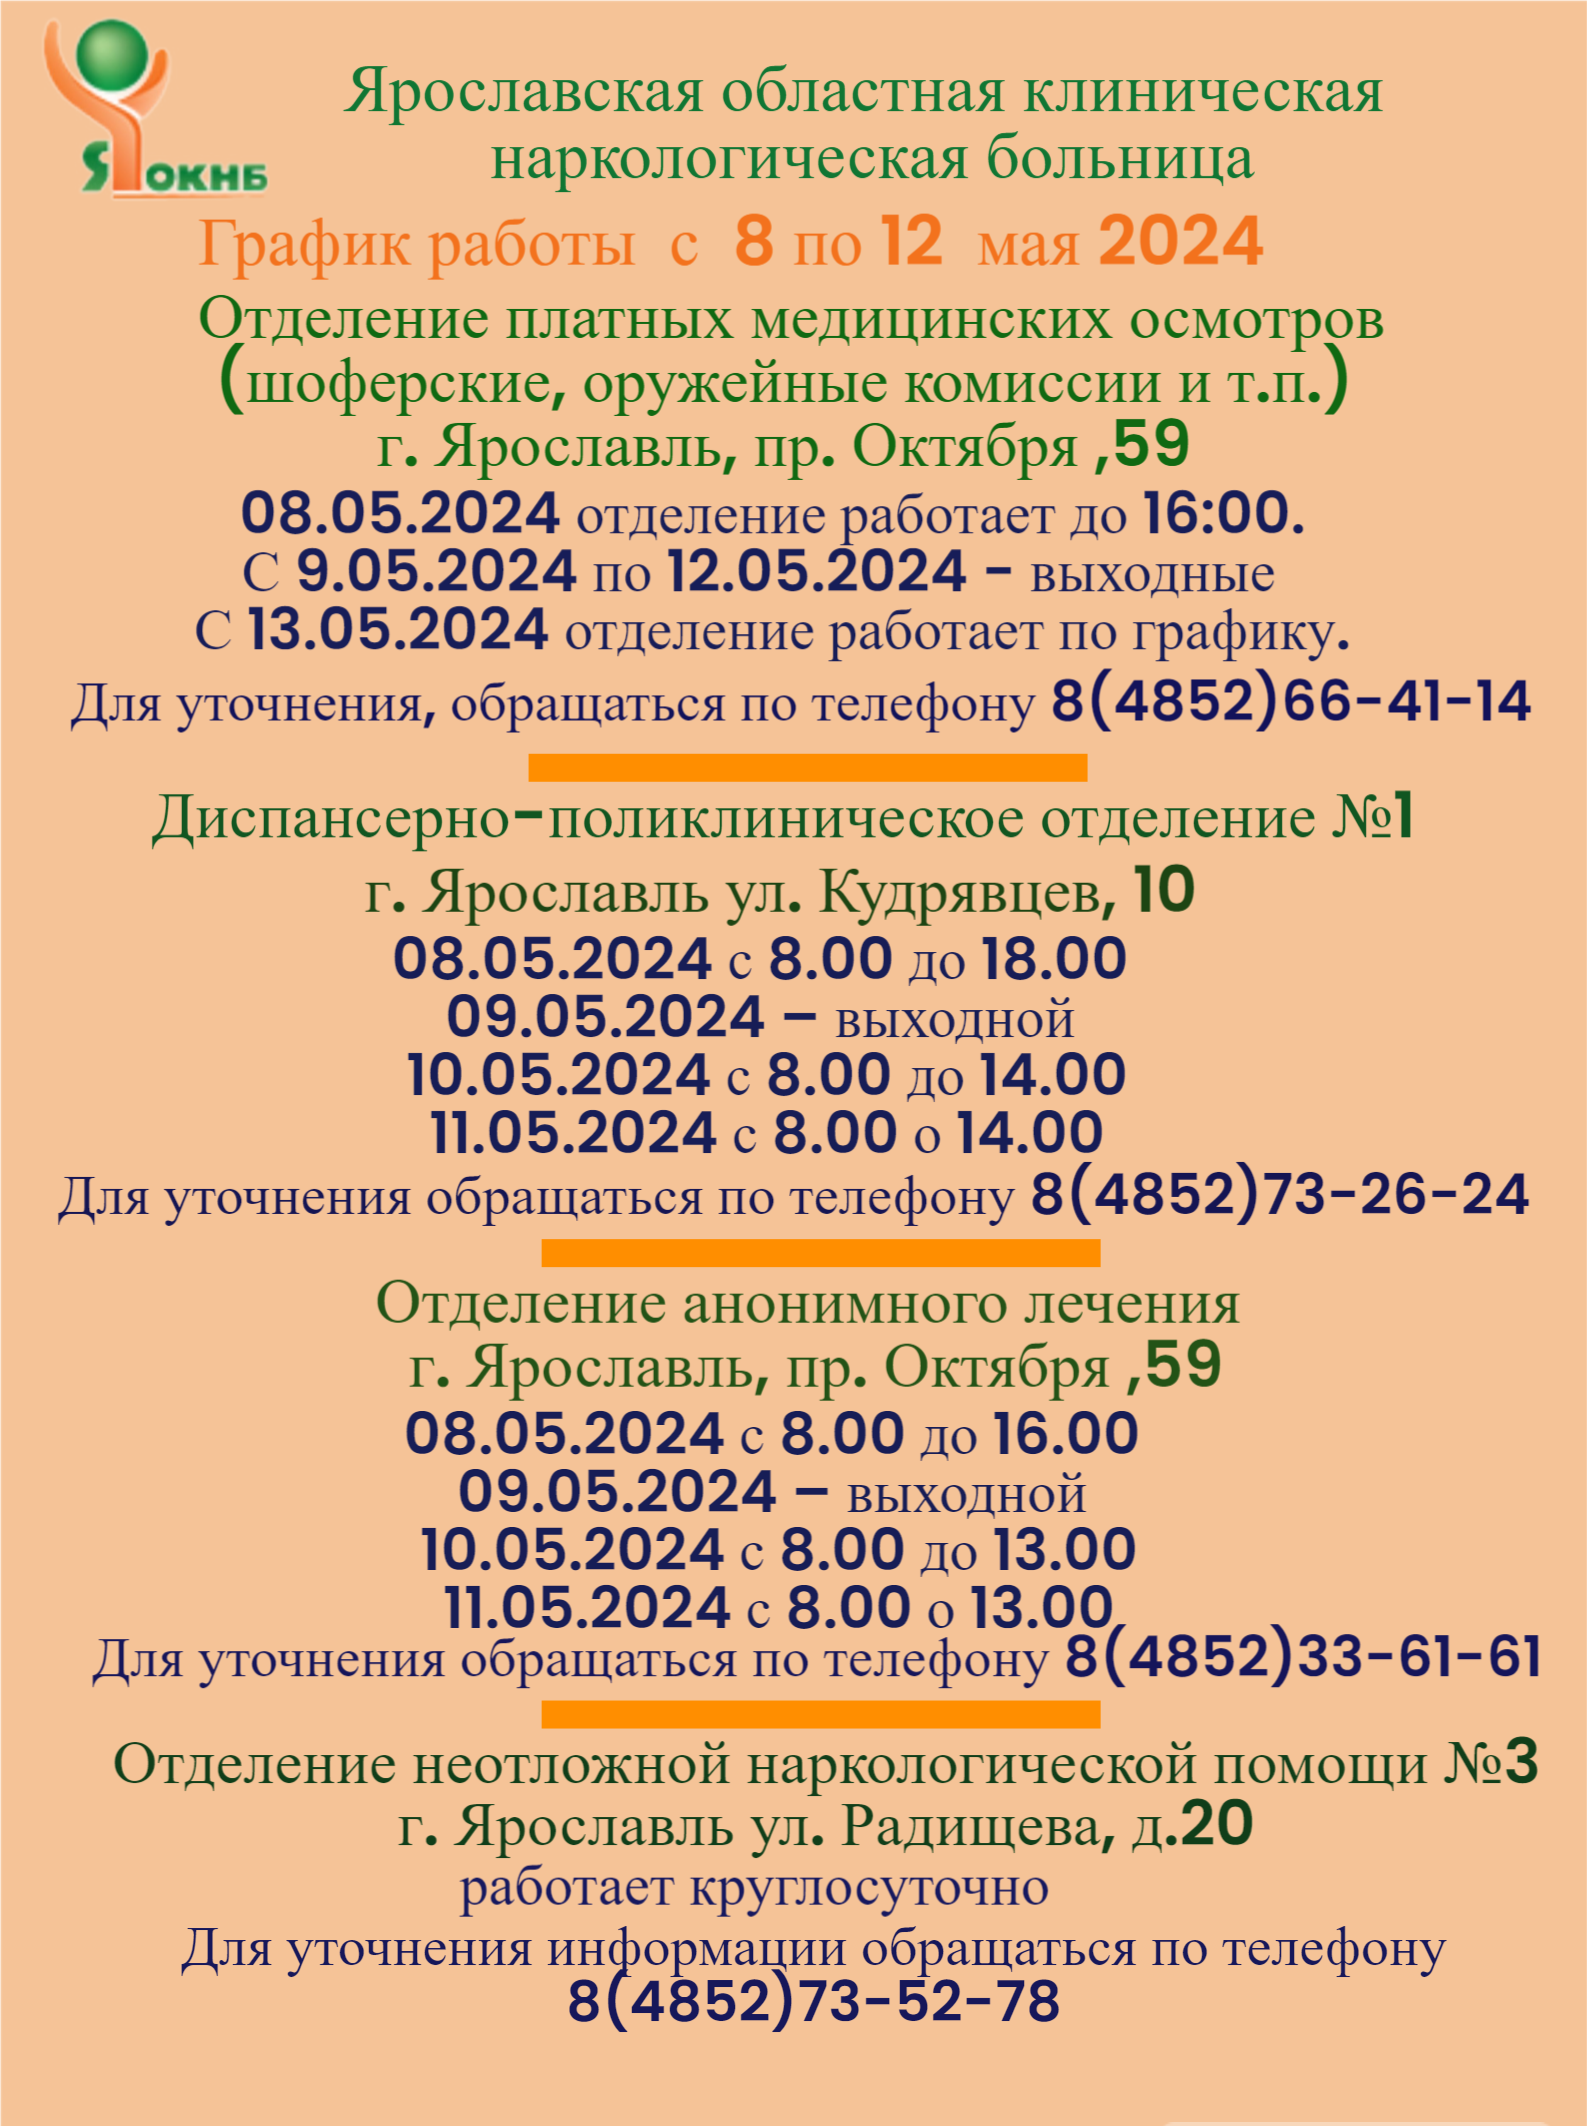 График работы подразделений Ярославской областной клинической наркологической больницы с 8 по 12 мая 2024 года